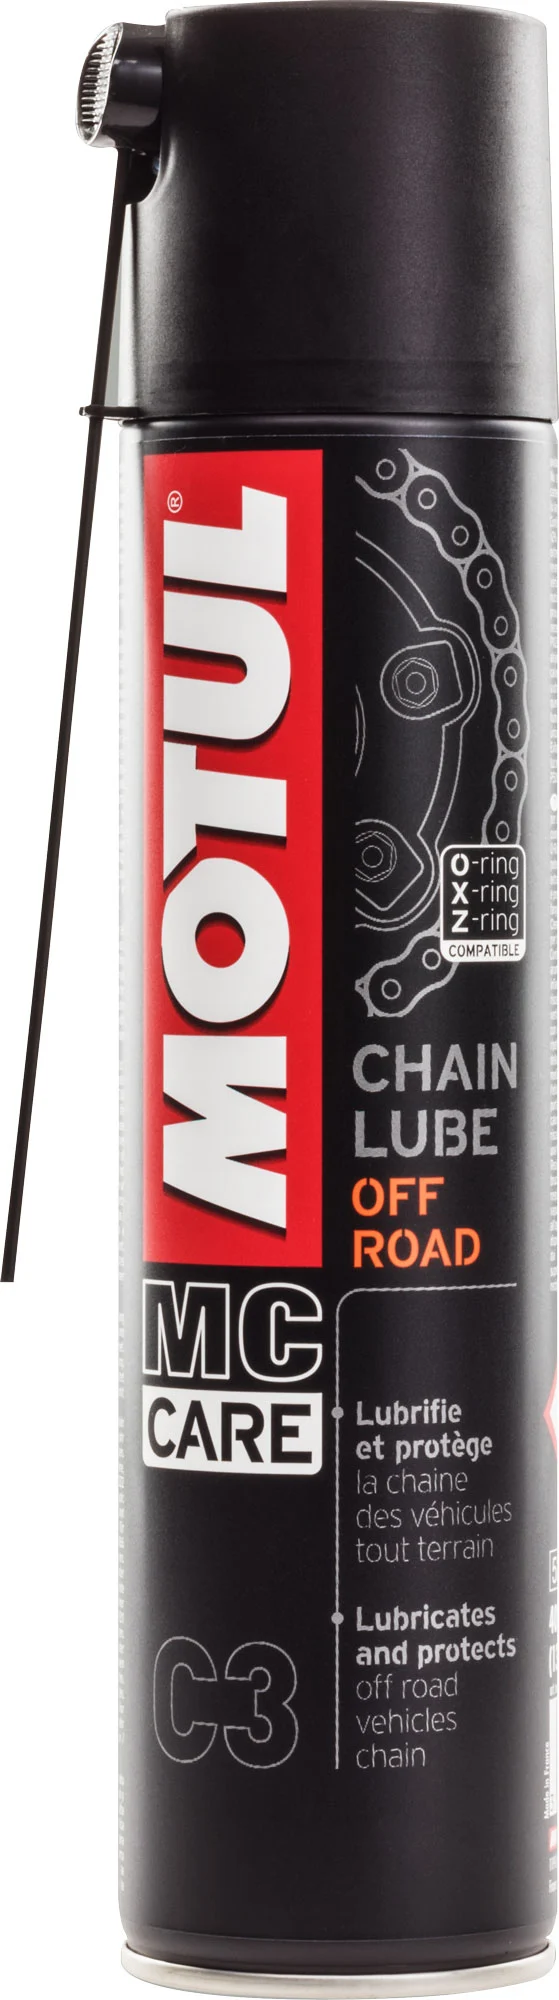 Motul C3 MC Care MOTO Chain lube Off Road graisse huile Lubr..